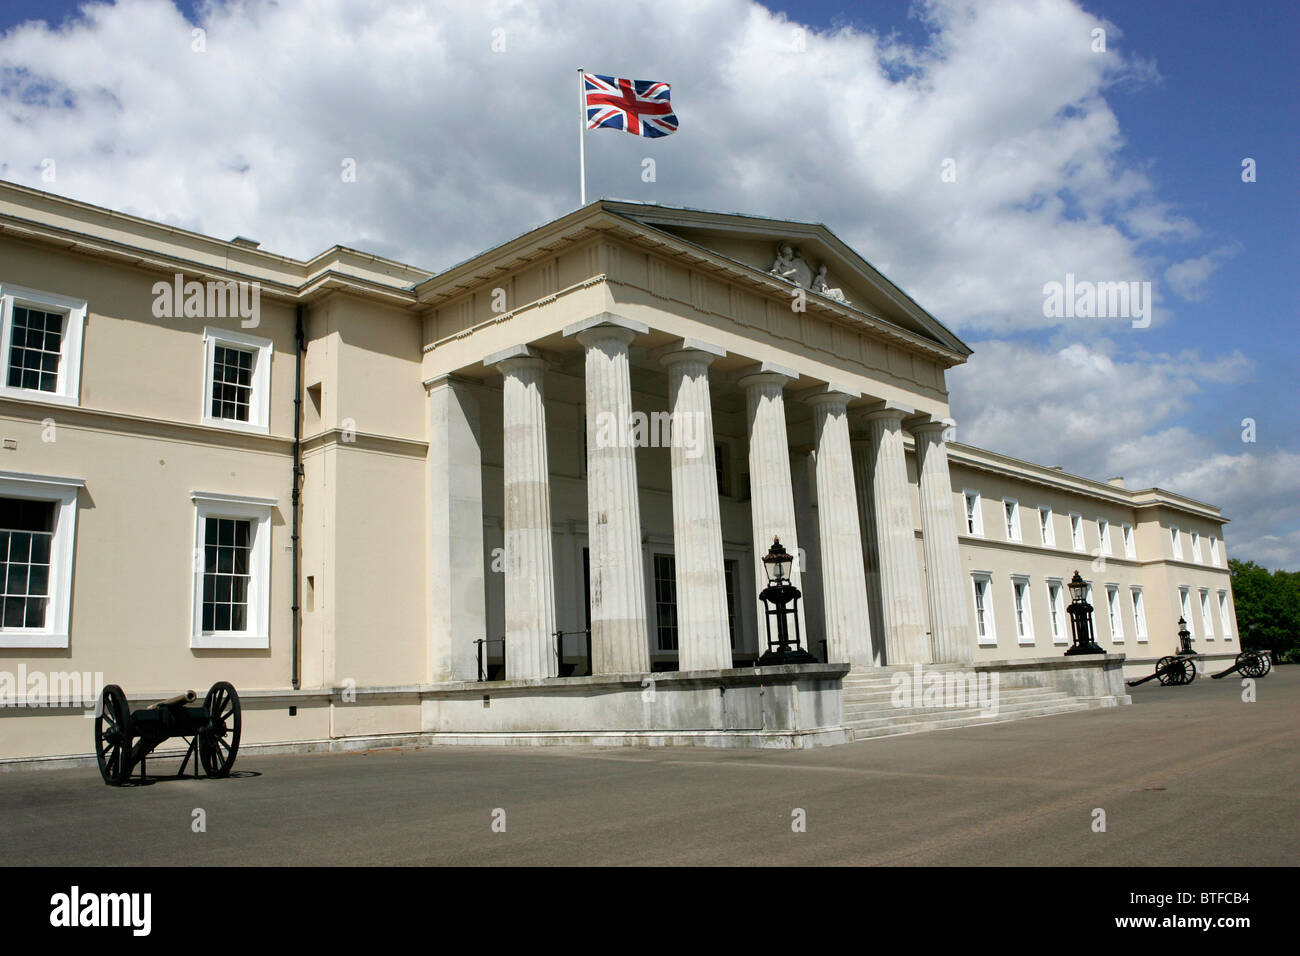 Sandhurst Royal Military Academy with Union Jack flag on flagpole, in Sandhurst, Surrey, United Kingdom Stock Photo